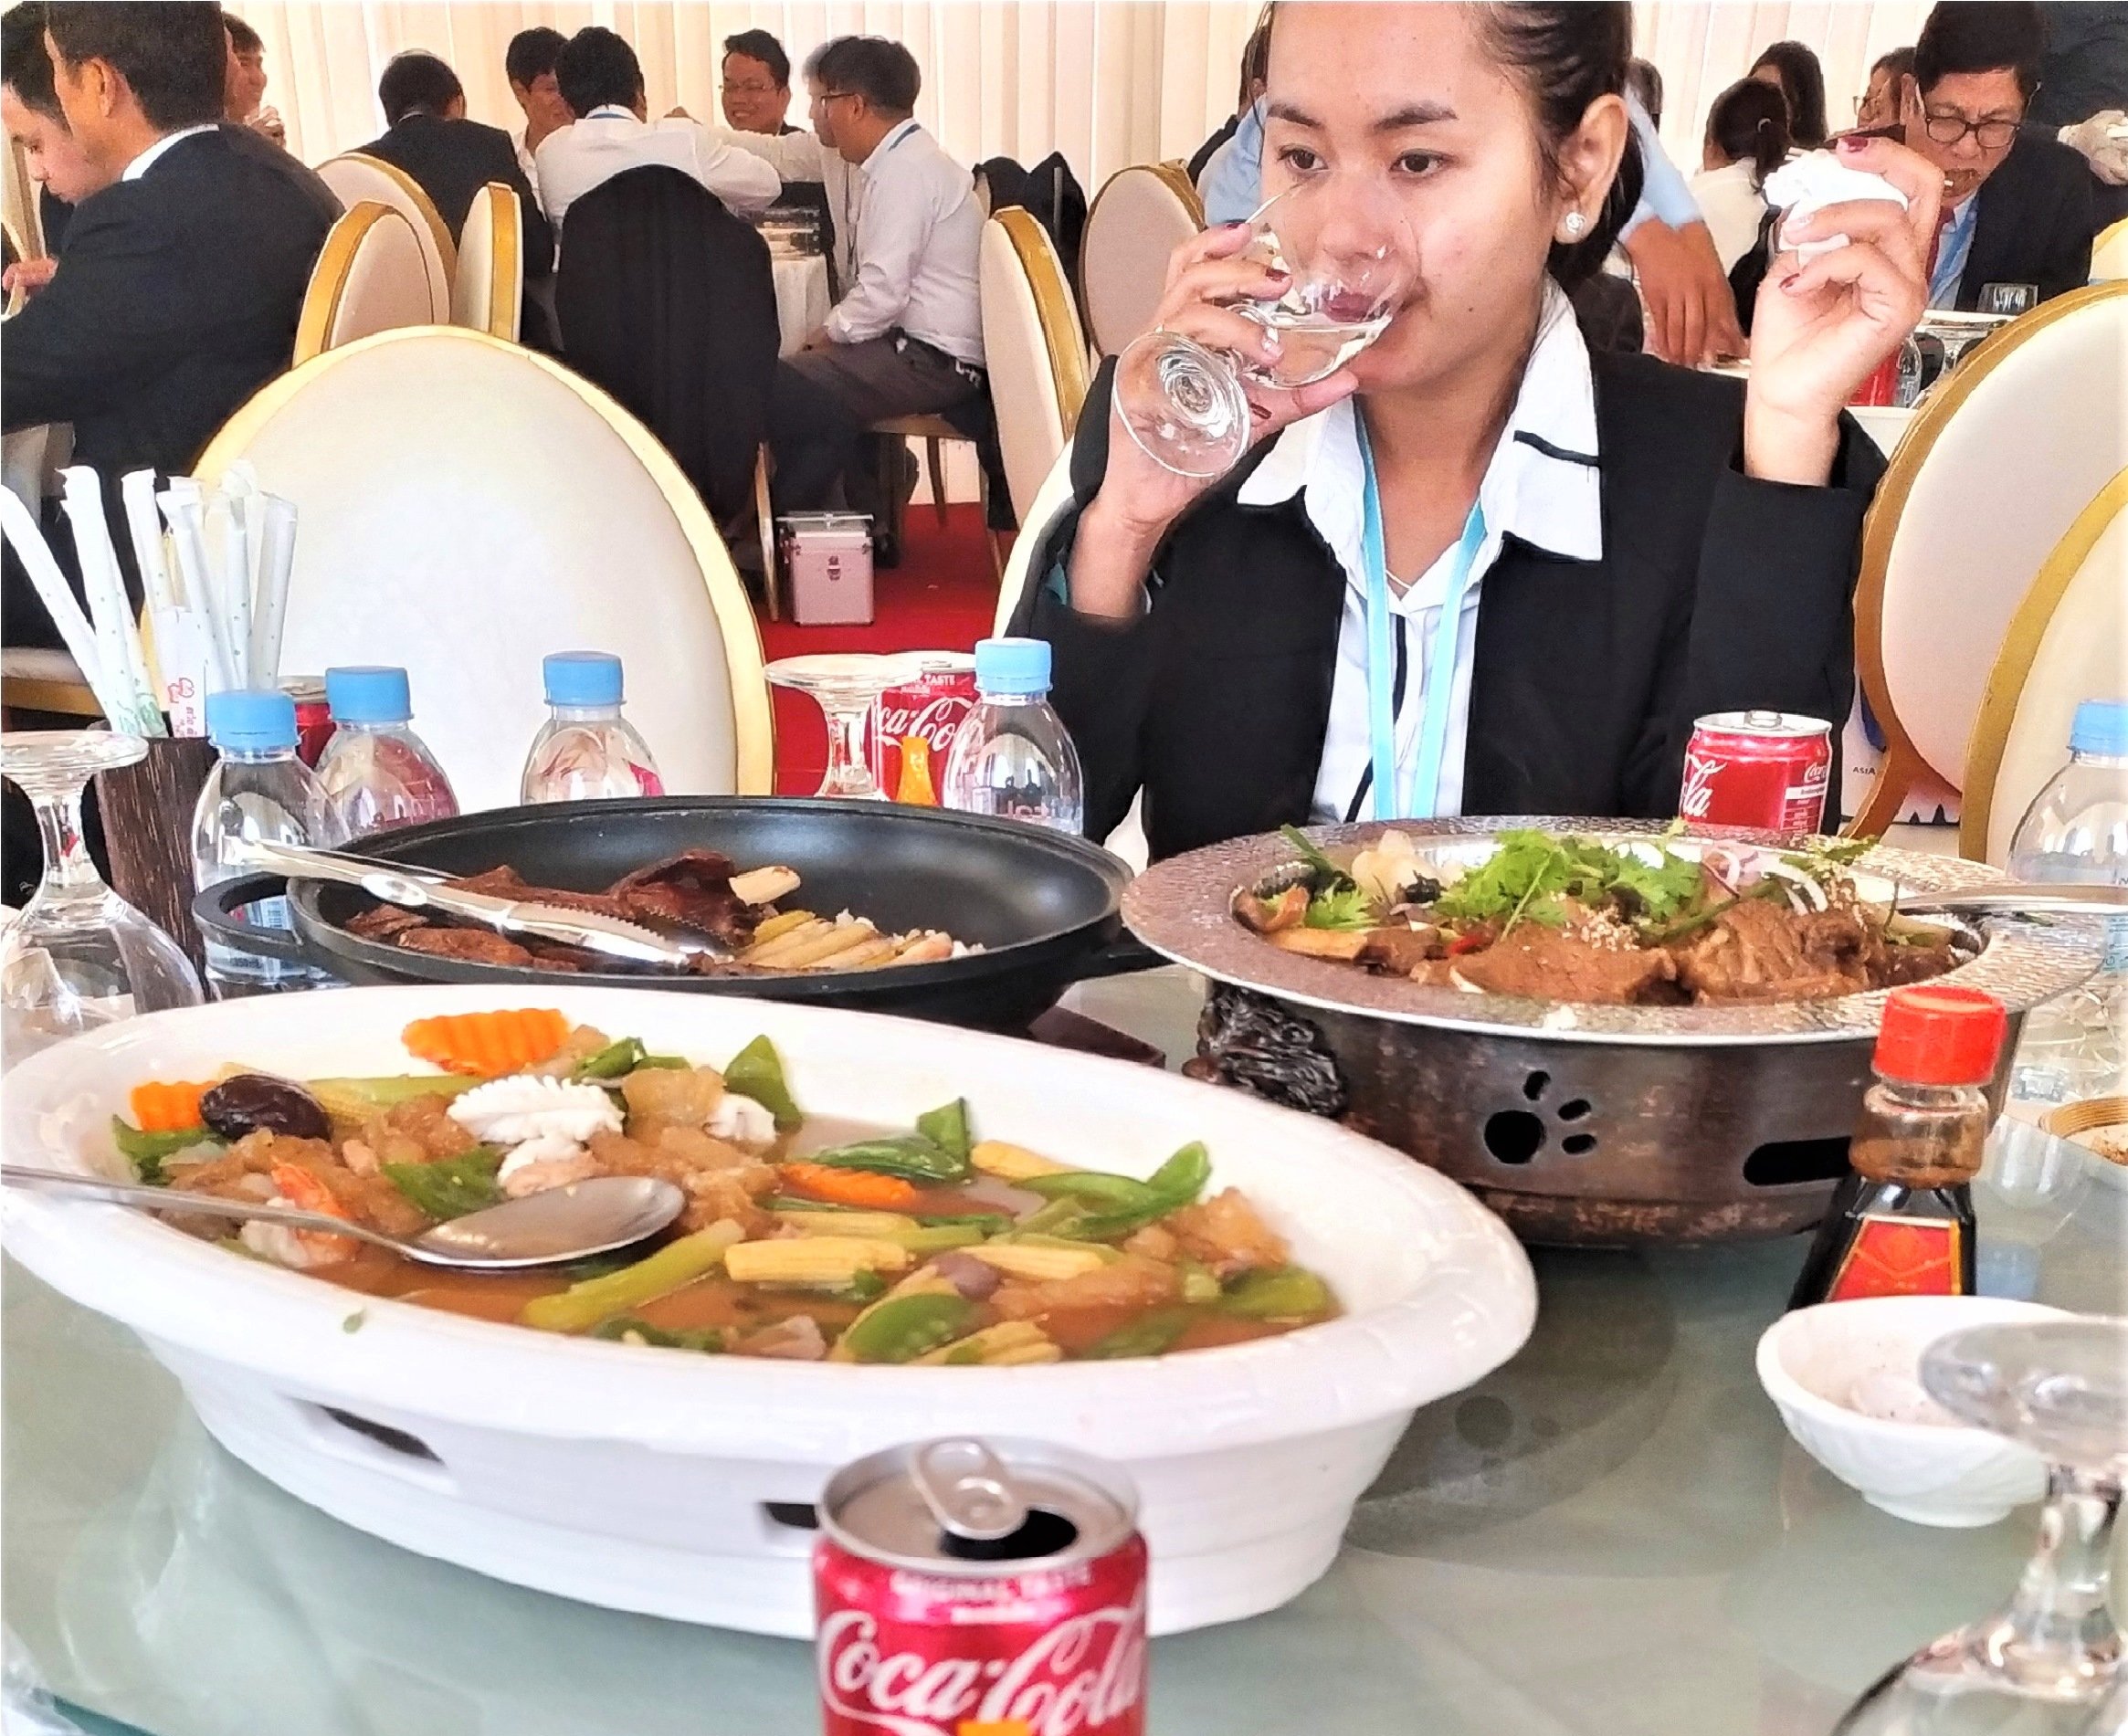 Кухня Камбоджи: если блюдо укусило Вас в ответ, значит, оно очень свежее! Часть 1